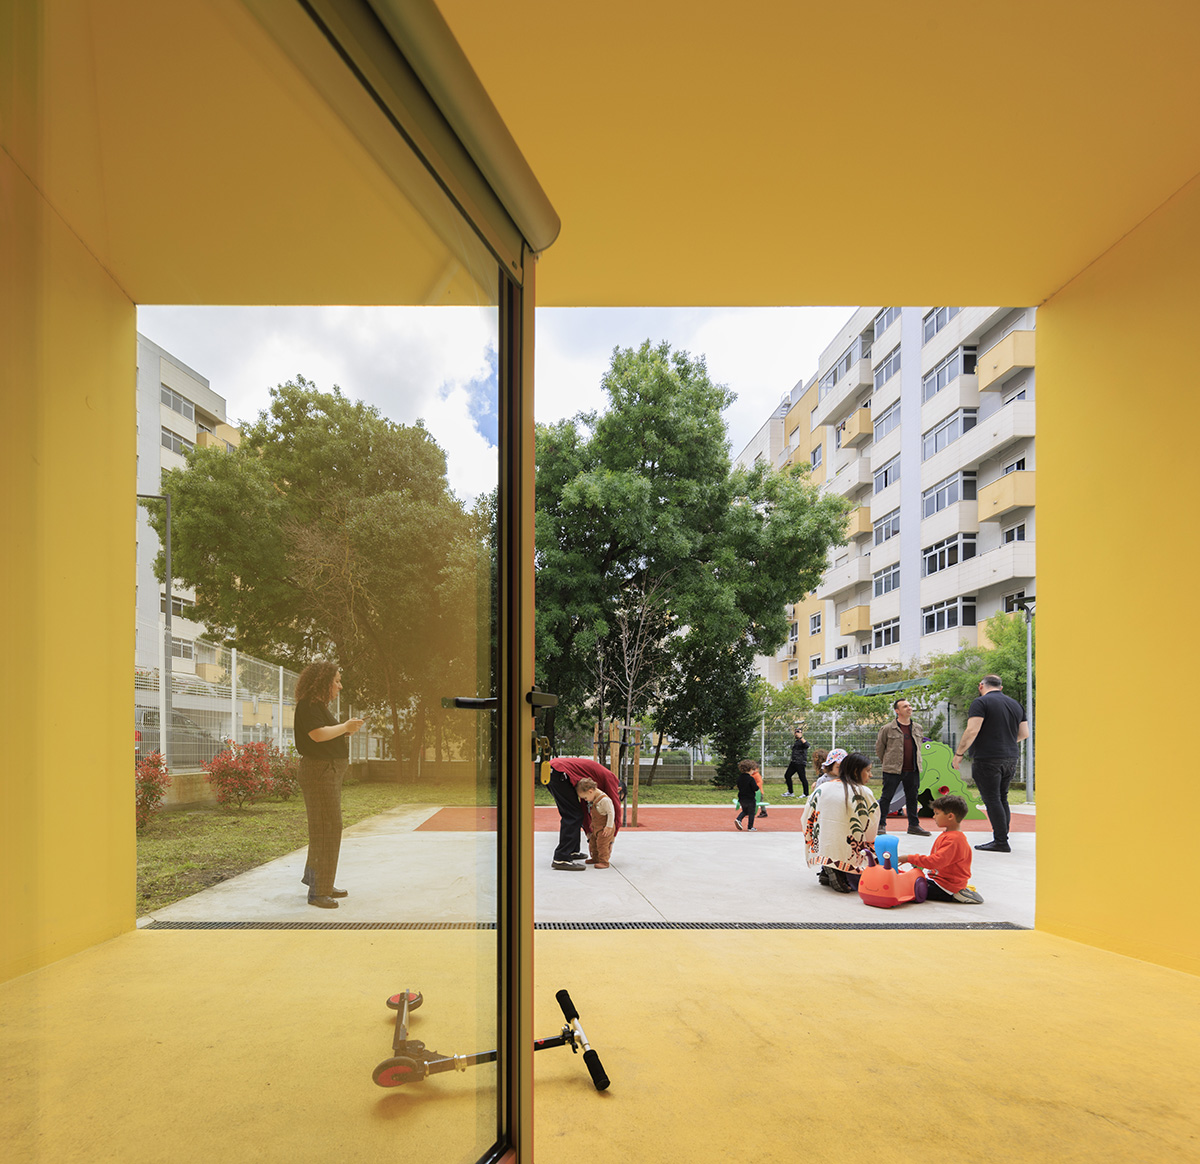 Summary built four modular kindergartens featuring colourful façades in Lisbon: worldarchitecture.org/architecture-n… #architecture